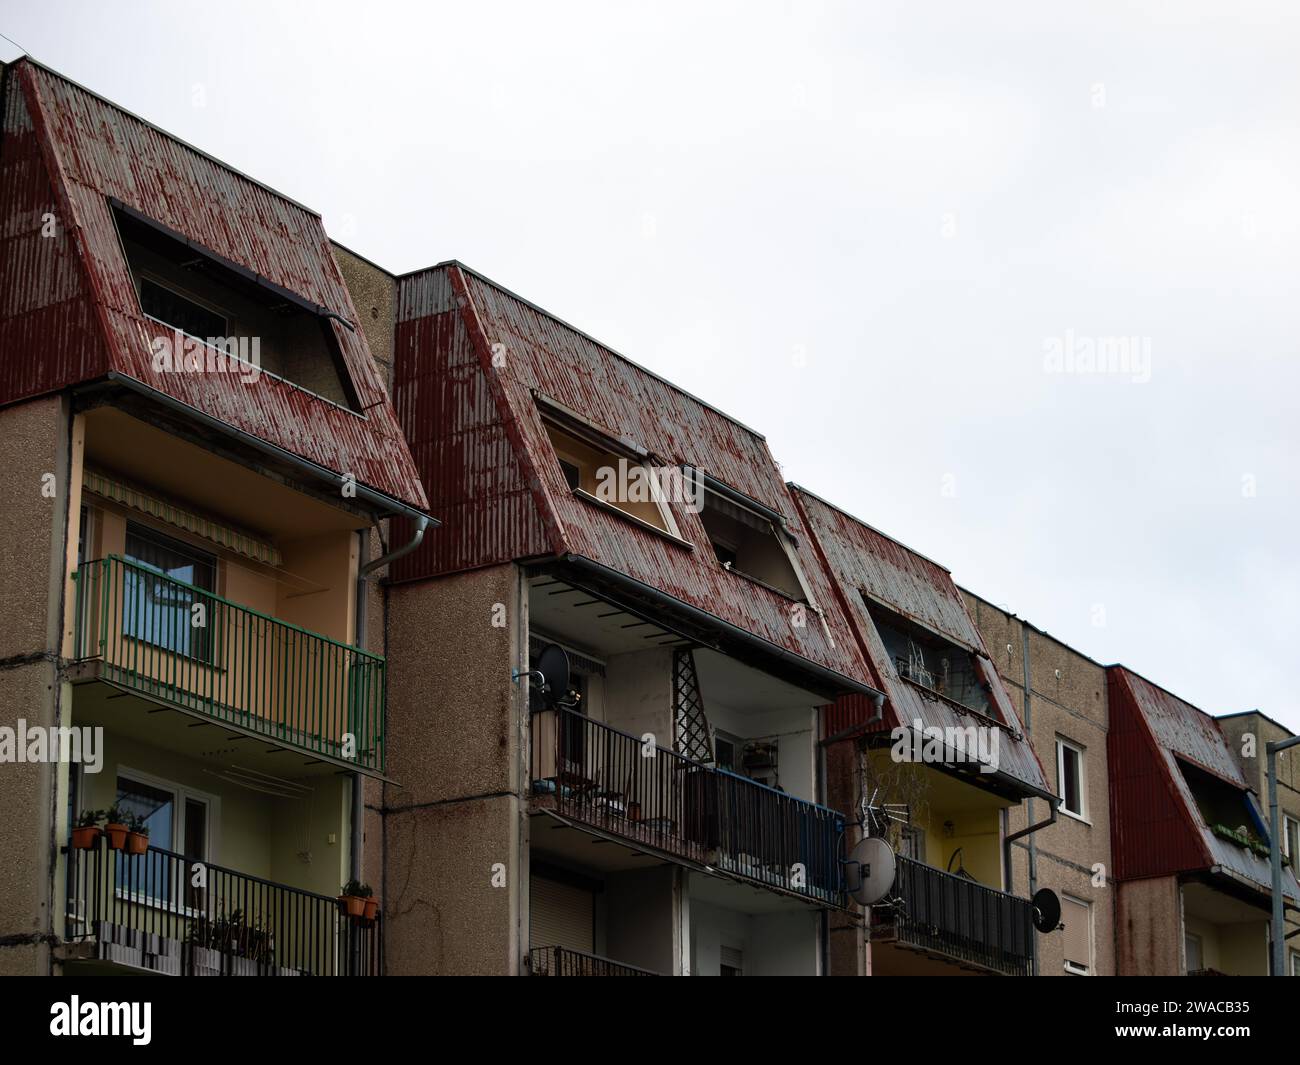 Dunkles Apartmentgebäude mit einer alten Außenfassade. Wohnungen mit Balkonen im osteuropäischen Architekturstil mit vorgefertigten Steinelementen. Stockfoto